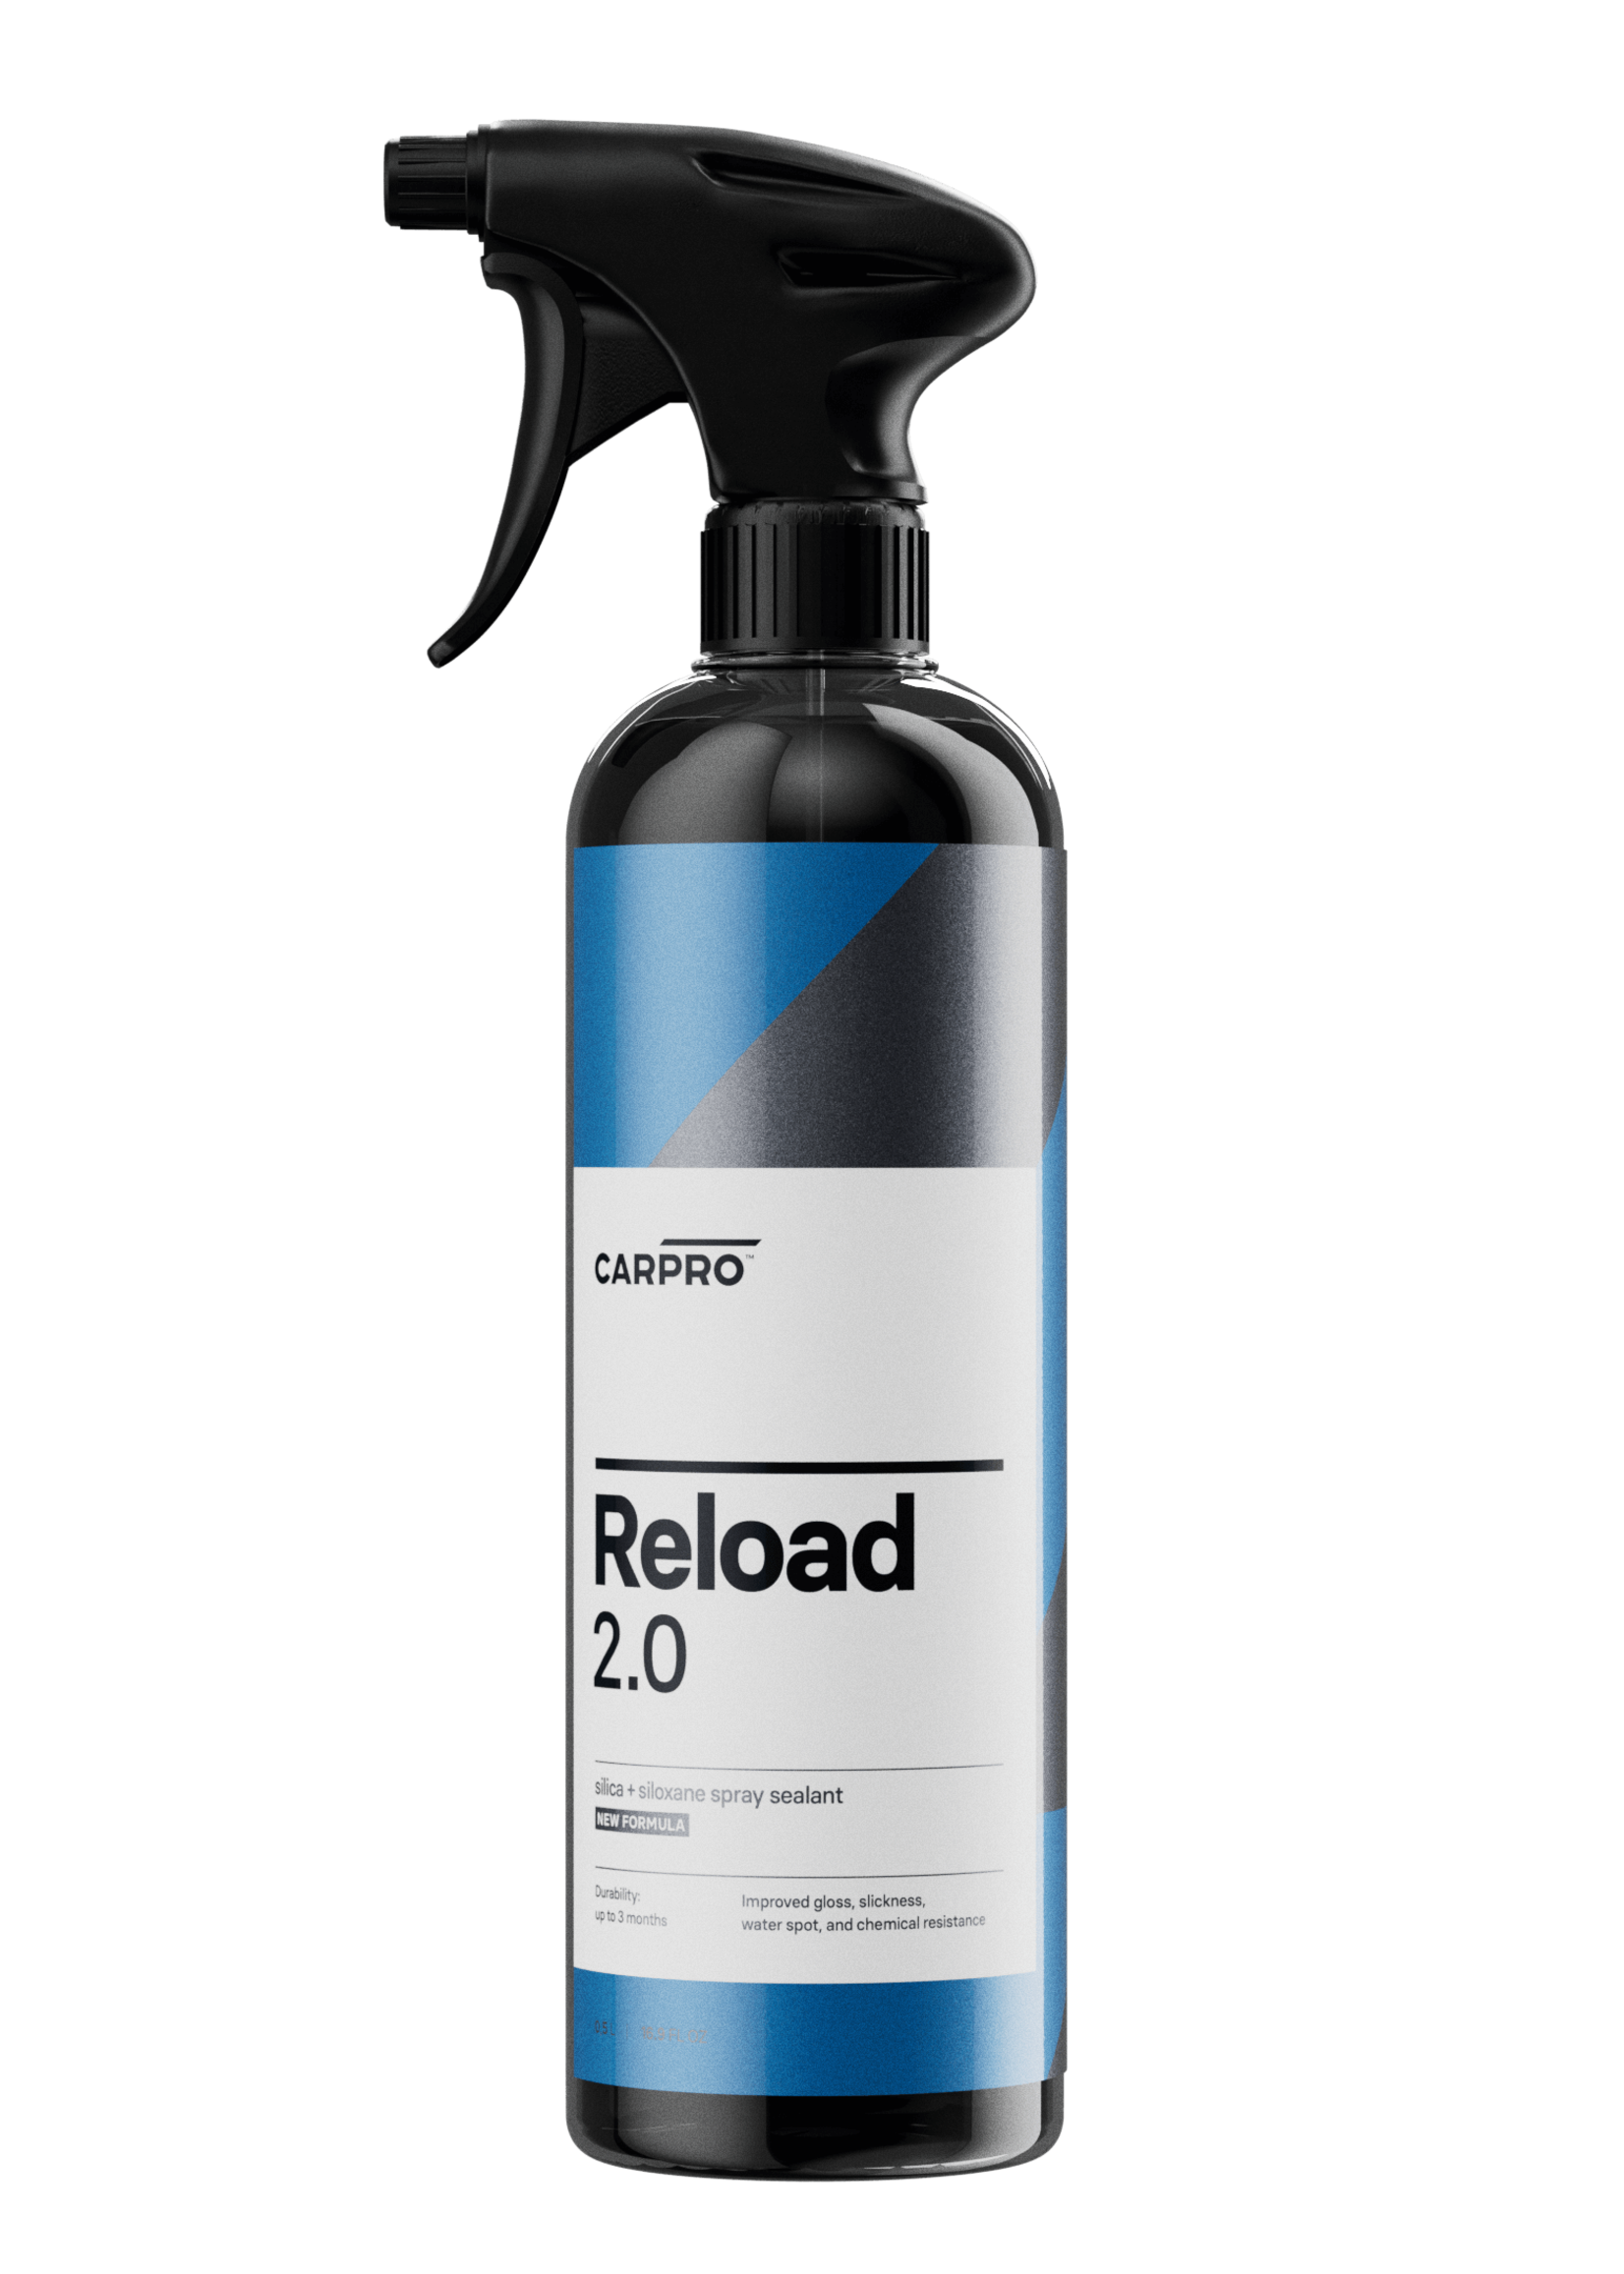 CARPRO Reload 2.0 Silica Sealant